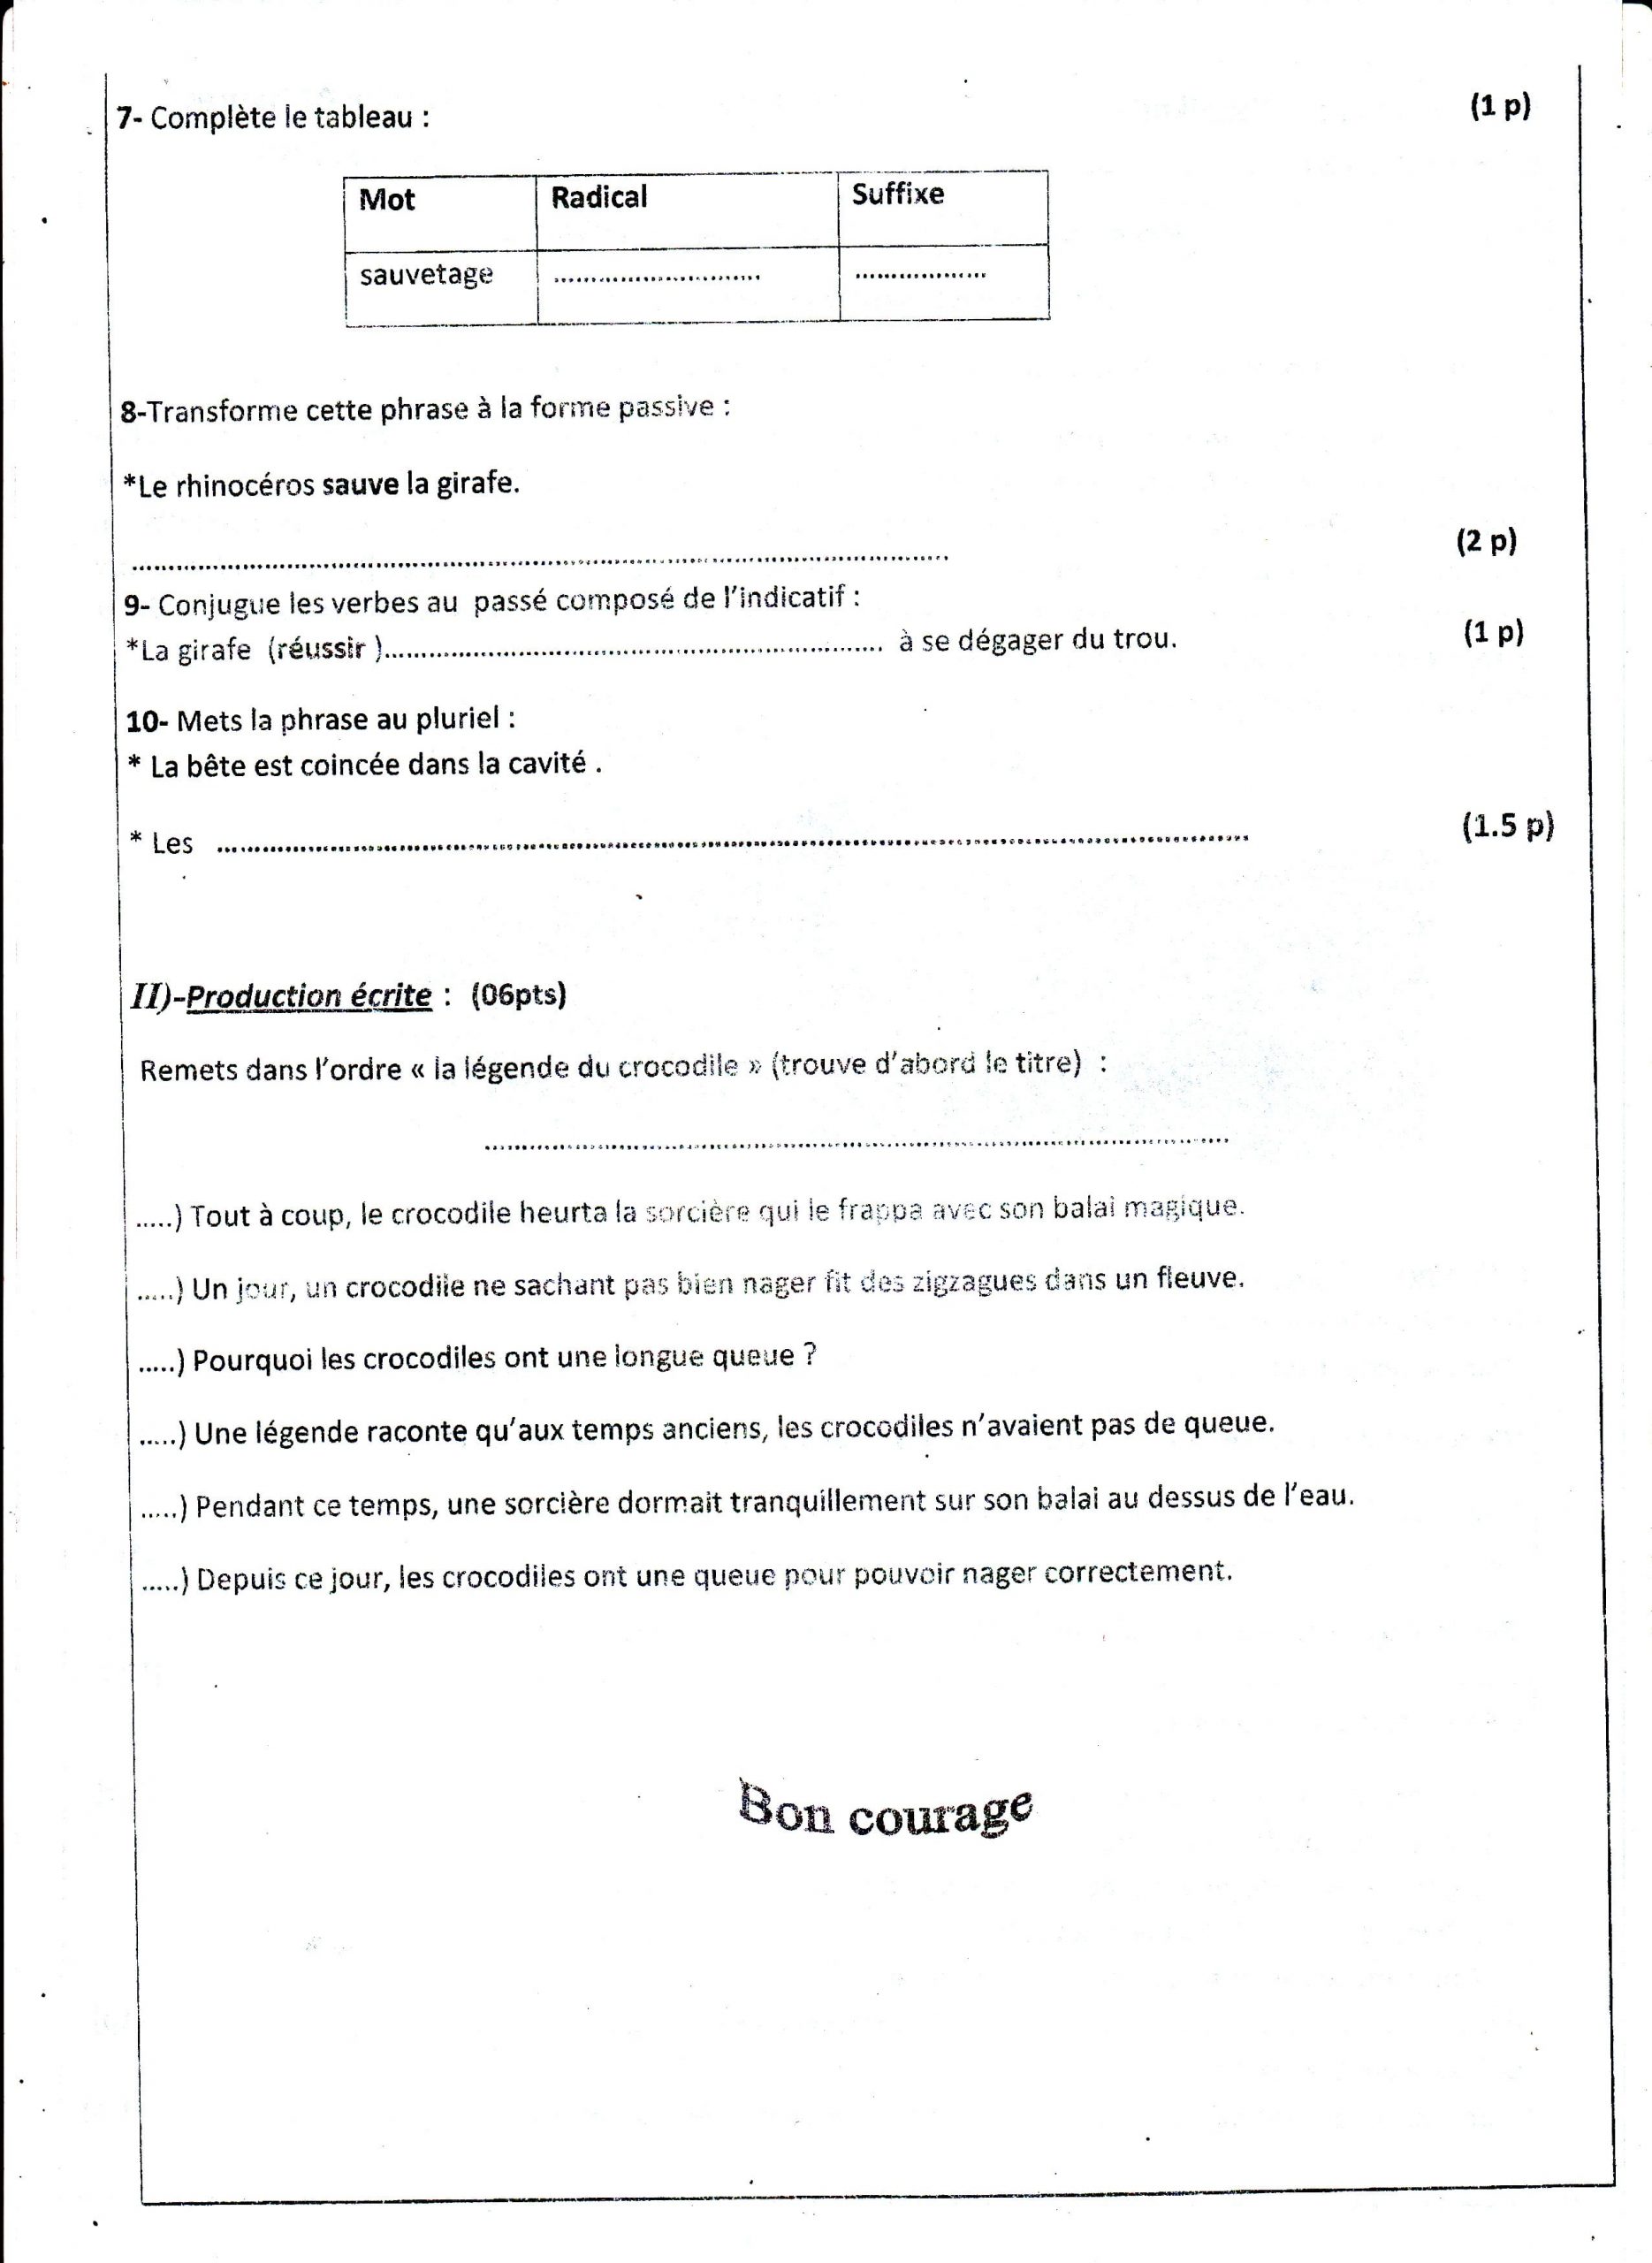 اختبار الفصل الثالث في اللغة الفرنسية السنة الثانية متوسط - الموضوع 01